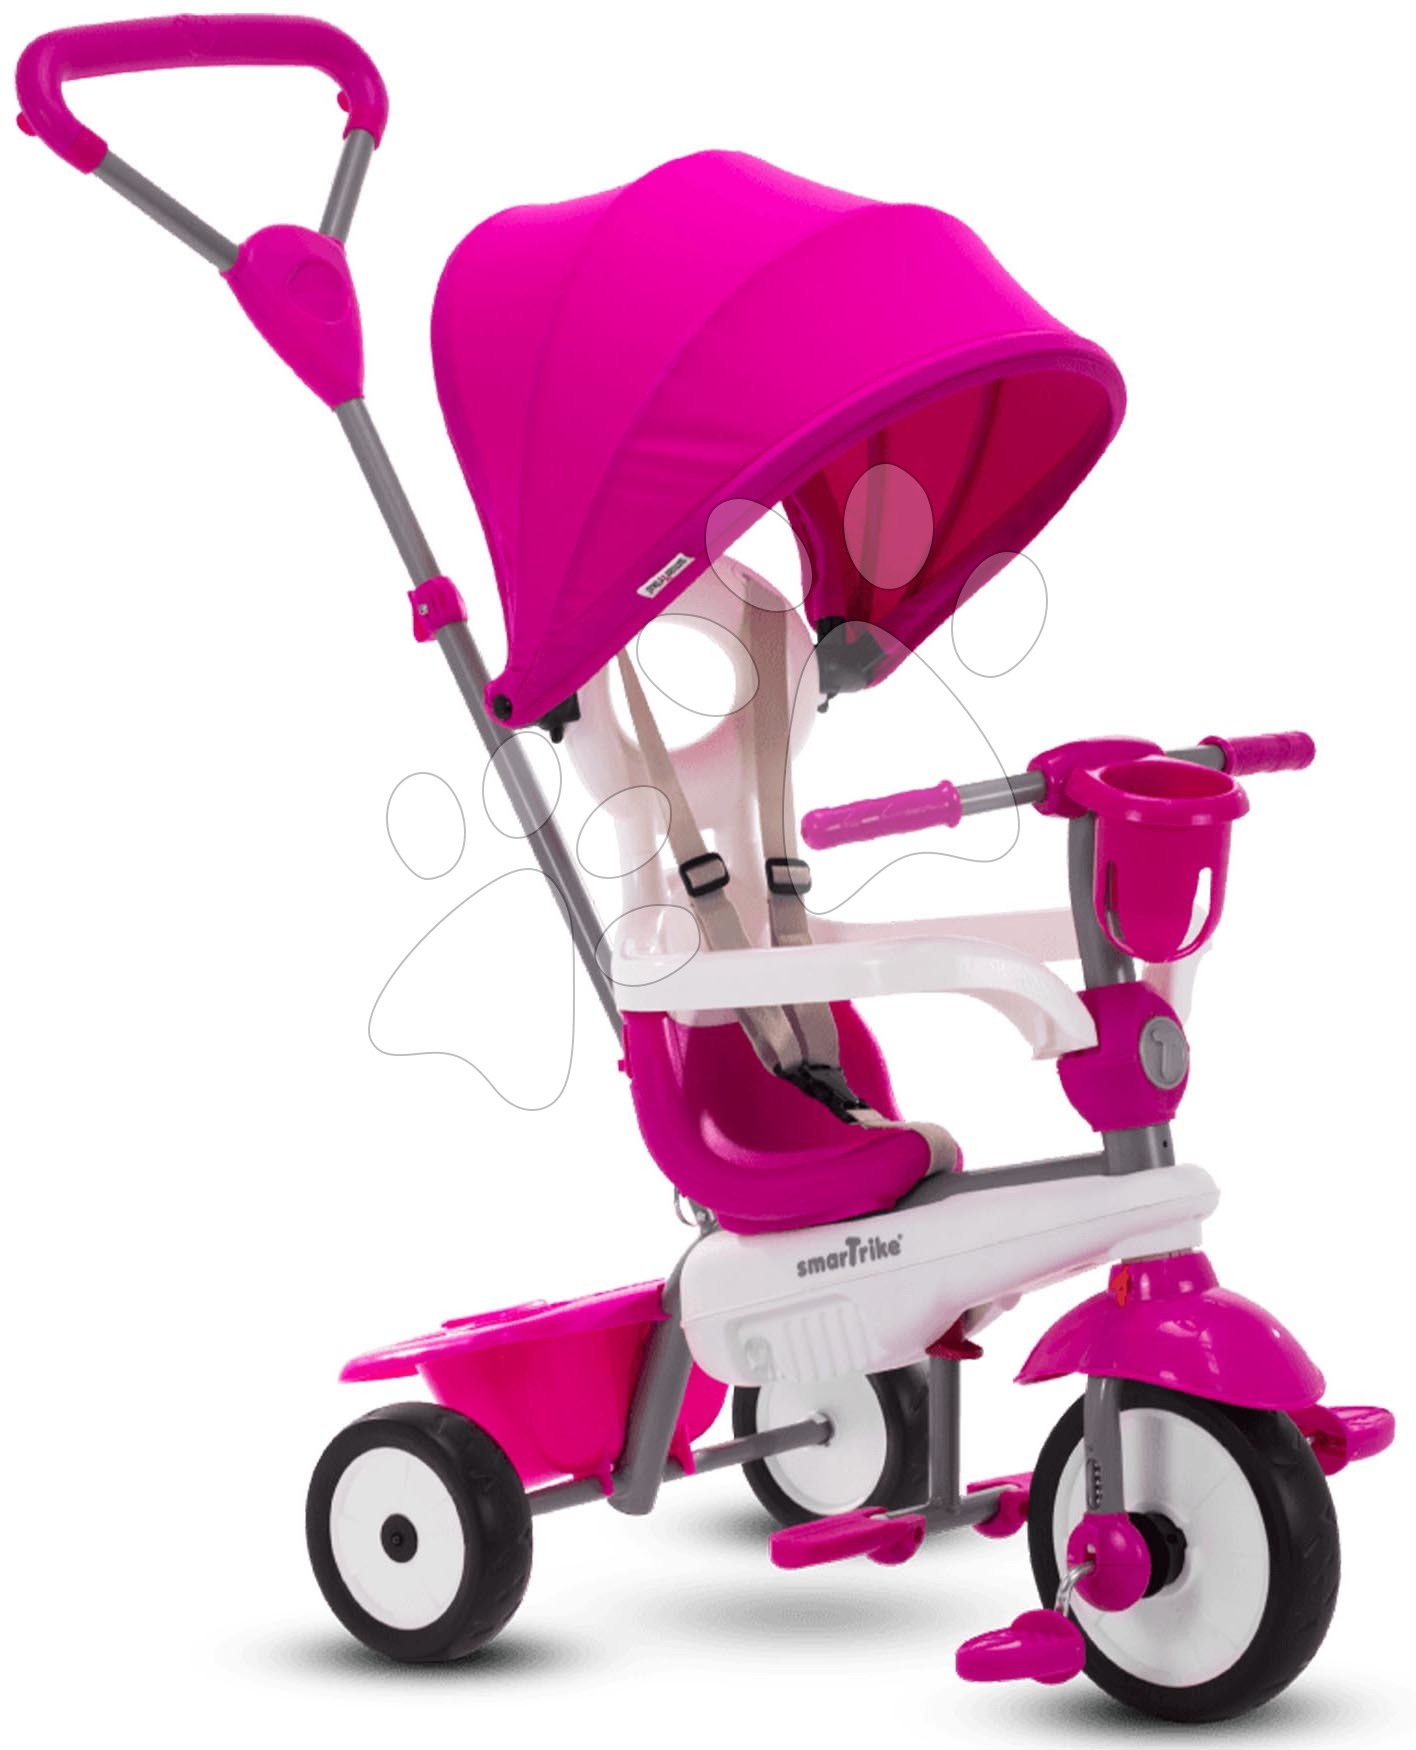 Triciklik 10 hónapos kortól - Tricikli Breeze Plus Pink Classic smarTrike TouchSteering vezérlés kulacstartóval gumikerekekkel lengéscsillapítóval 10 hó-tól